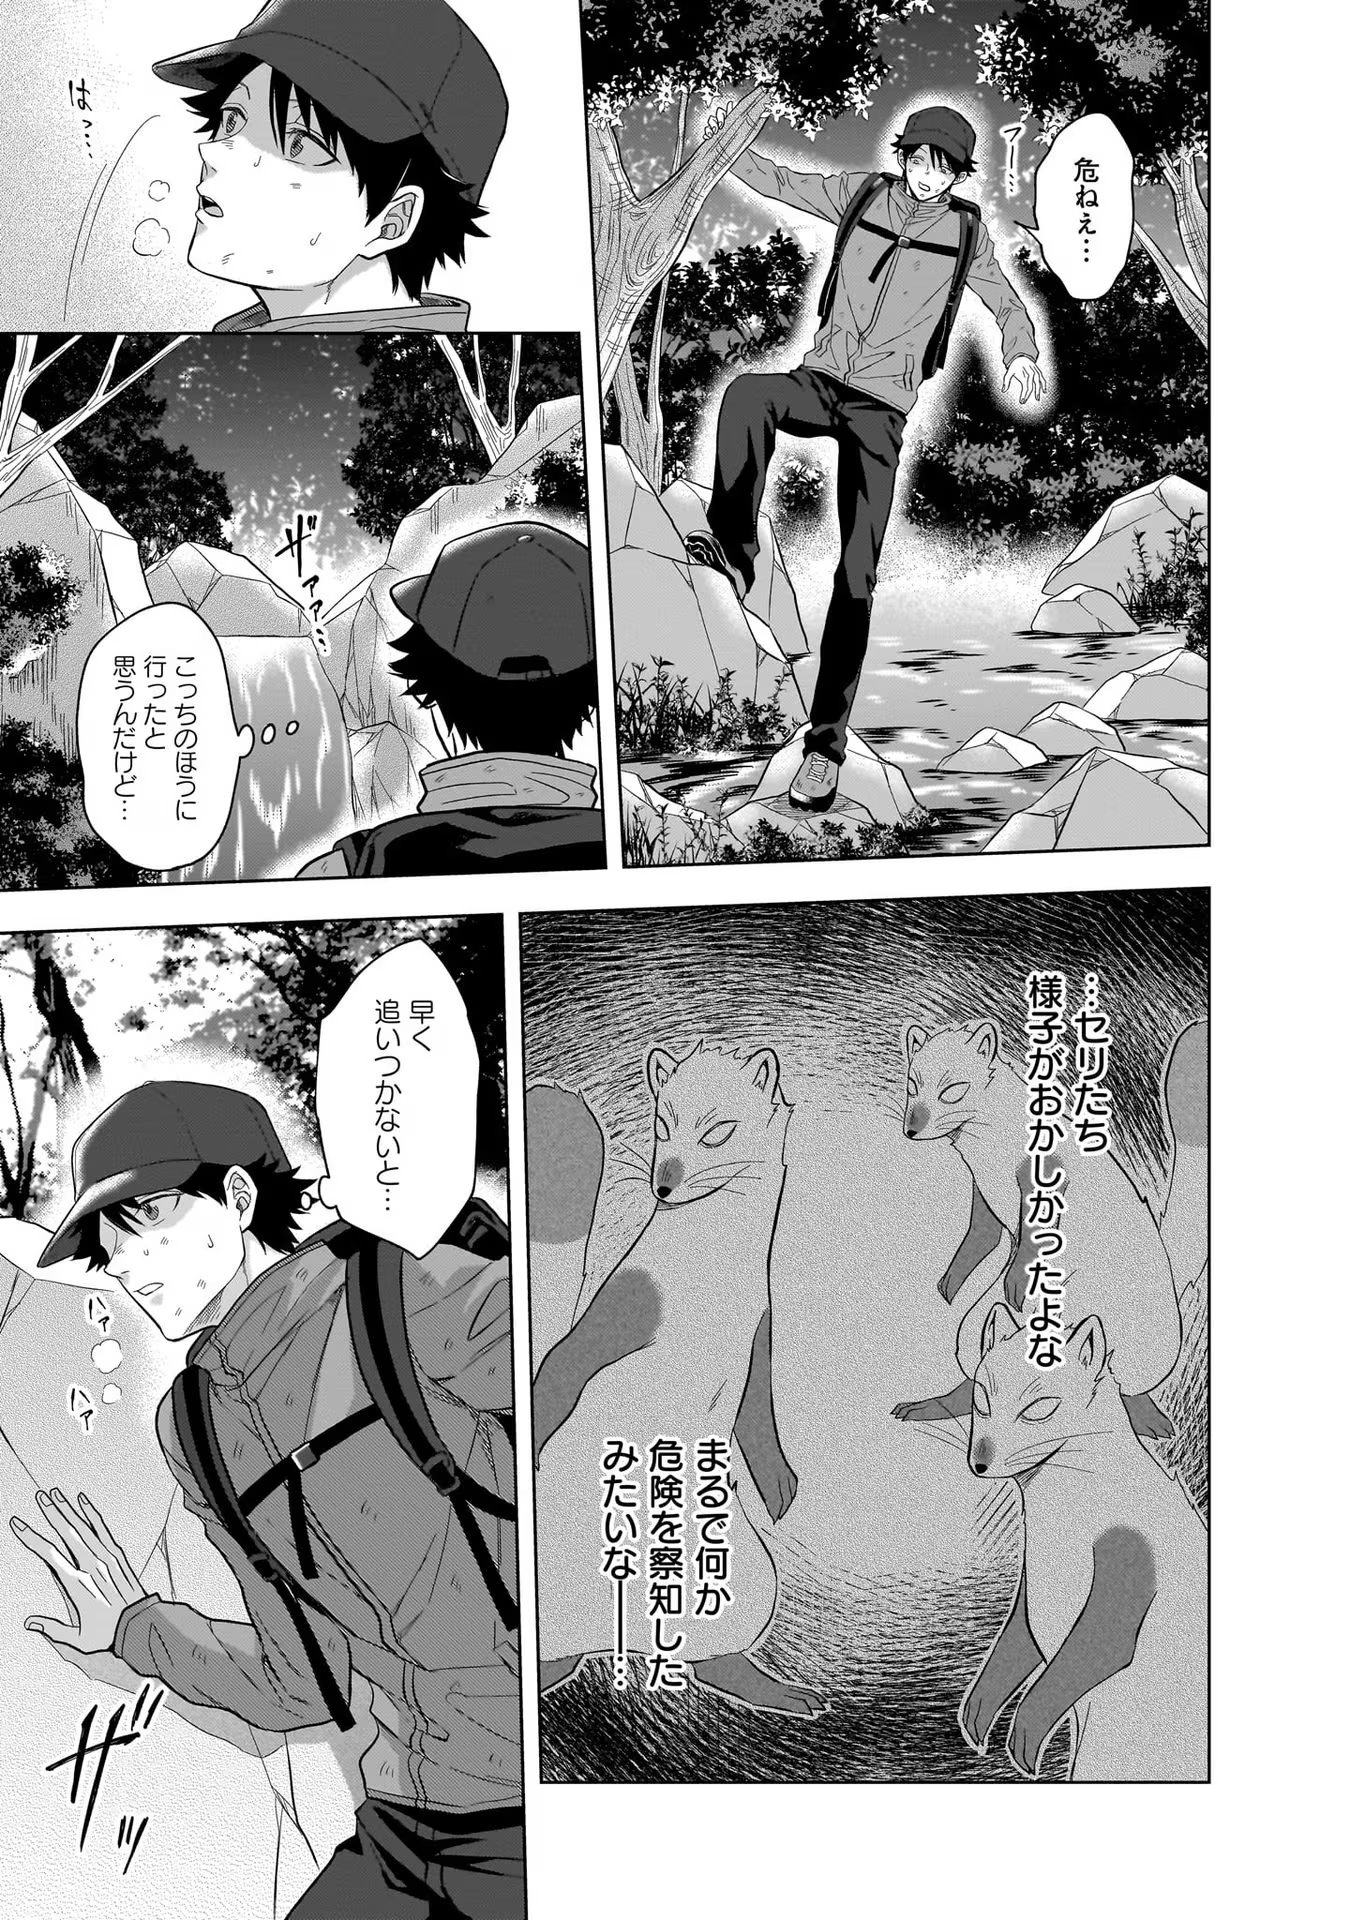 Kami no Niwatsuki Kusunoki-tei - Chapter 8 - Page 3